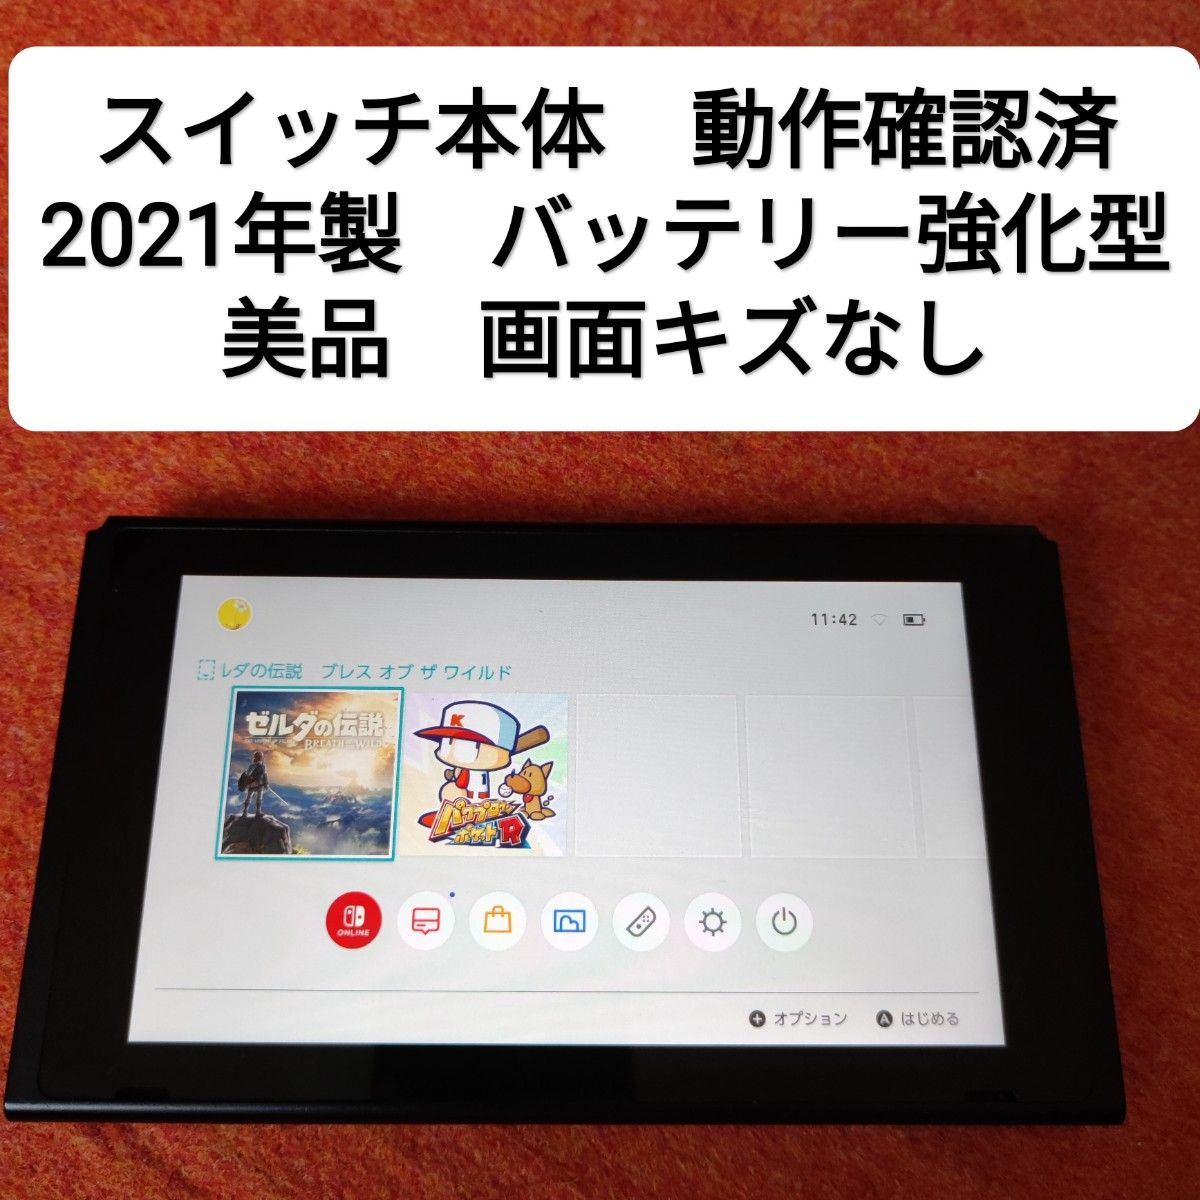 美品】新型 Nintendo Switch バッテリー強化モデル - kanimbandung 